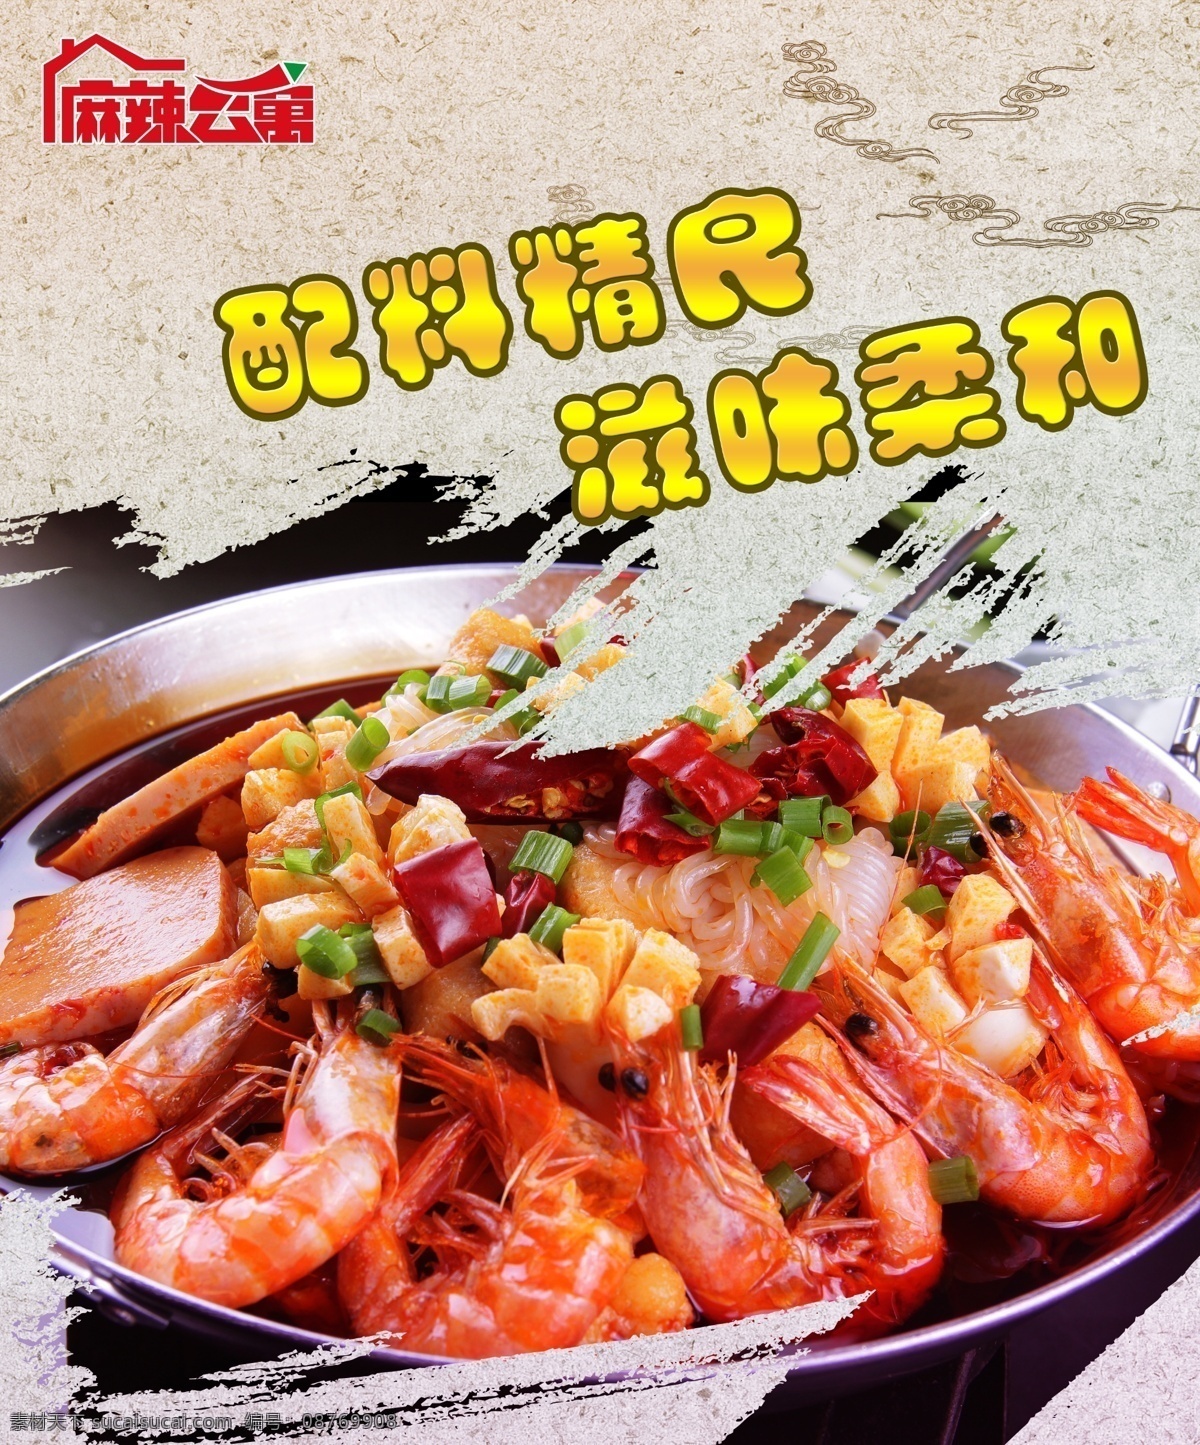 麻辣 香 虾 灯箱 片 香辣鲜虾 菜单 菜单图片 菜谱图片 广告 海报